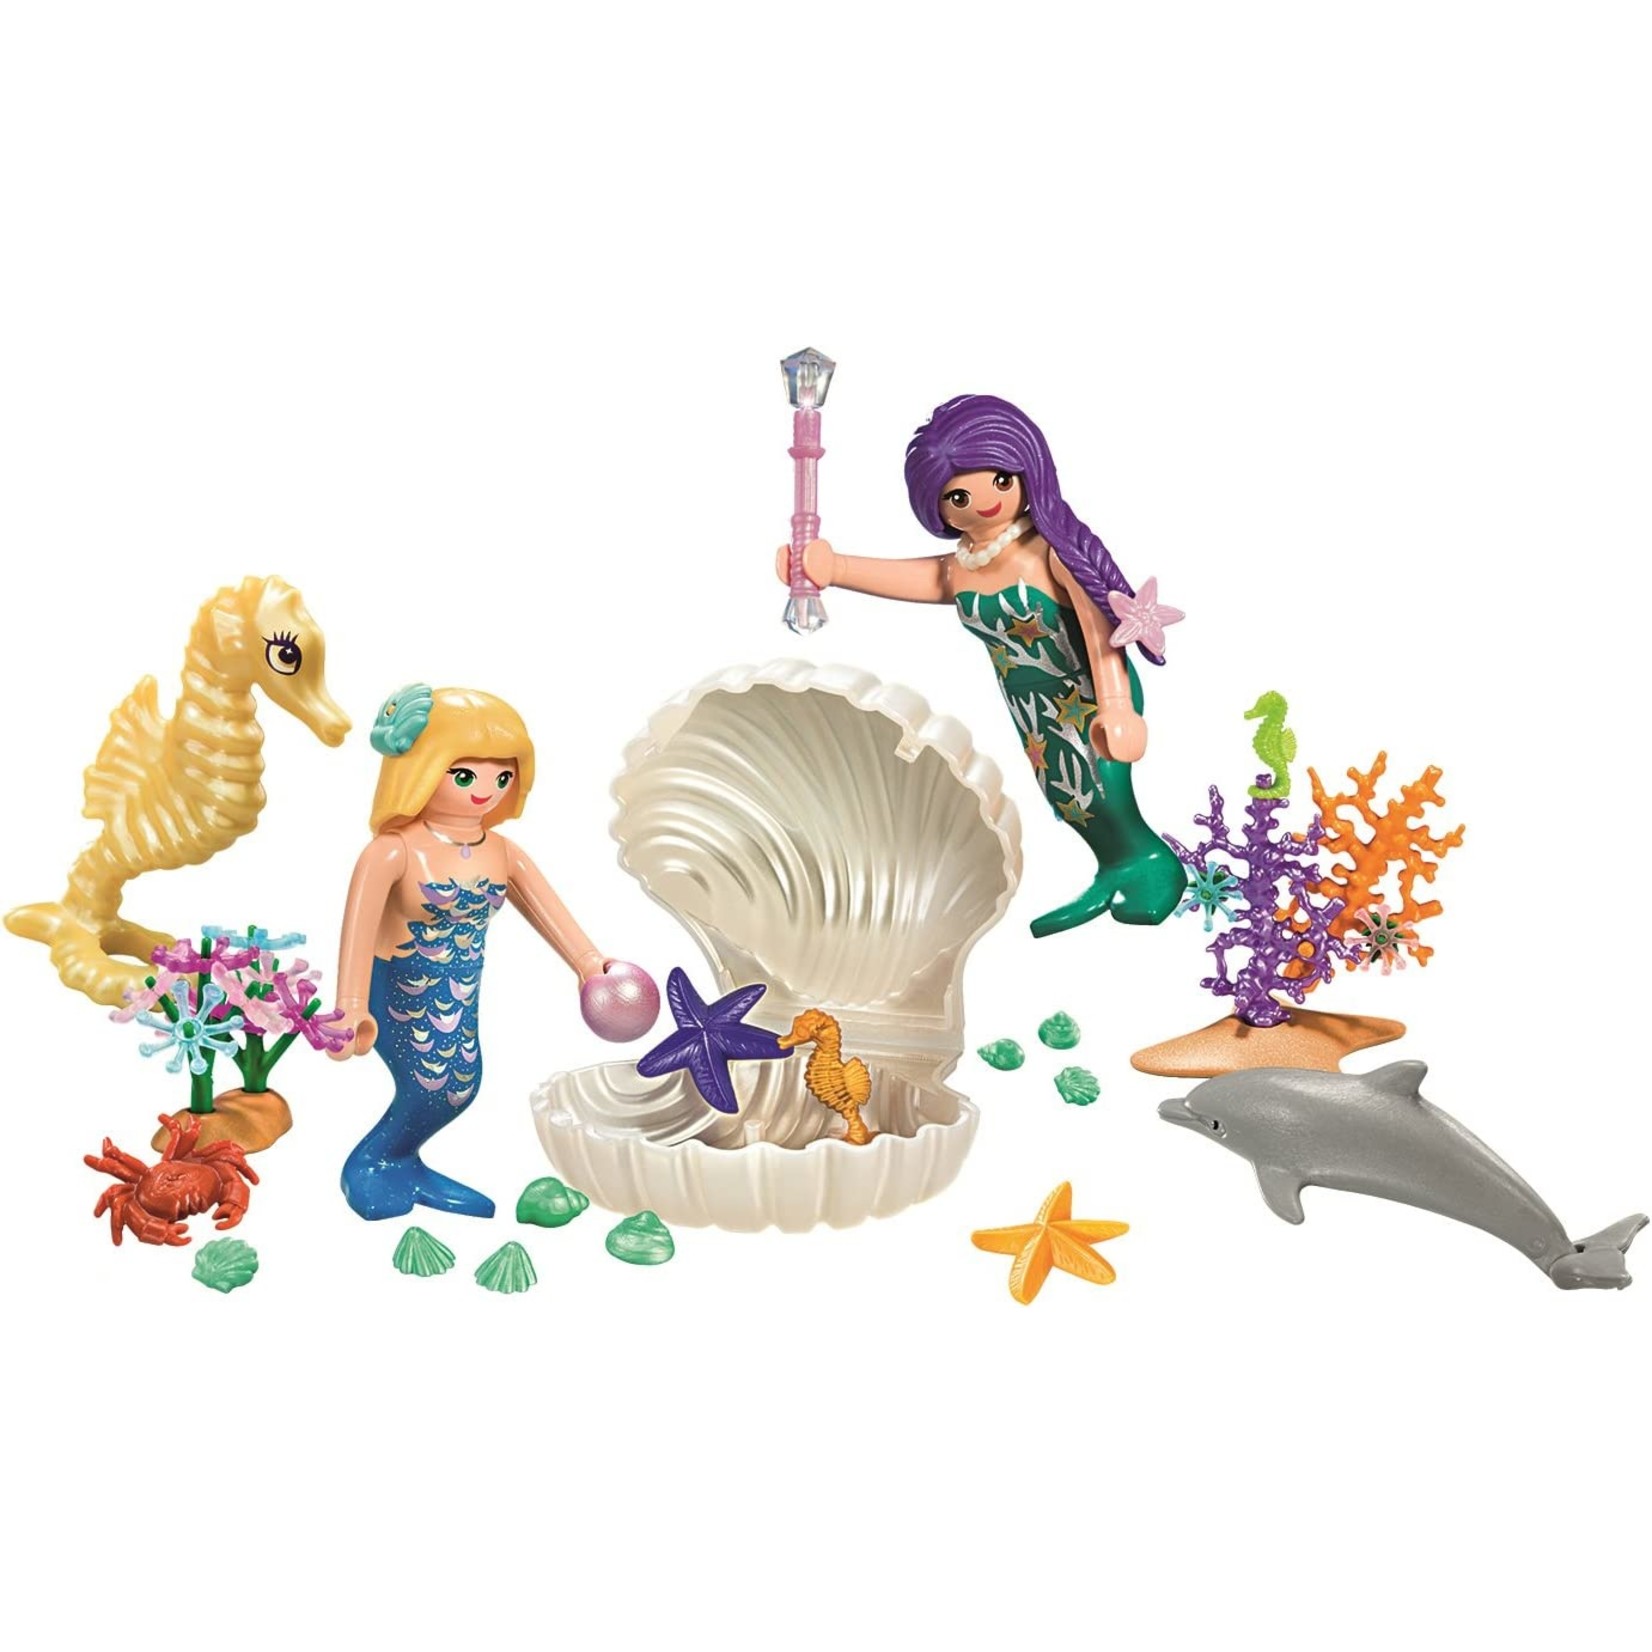 Playmobil Magical Mermaids Carry Case - Playmobil 9324